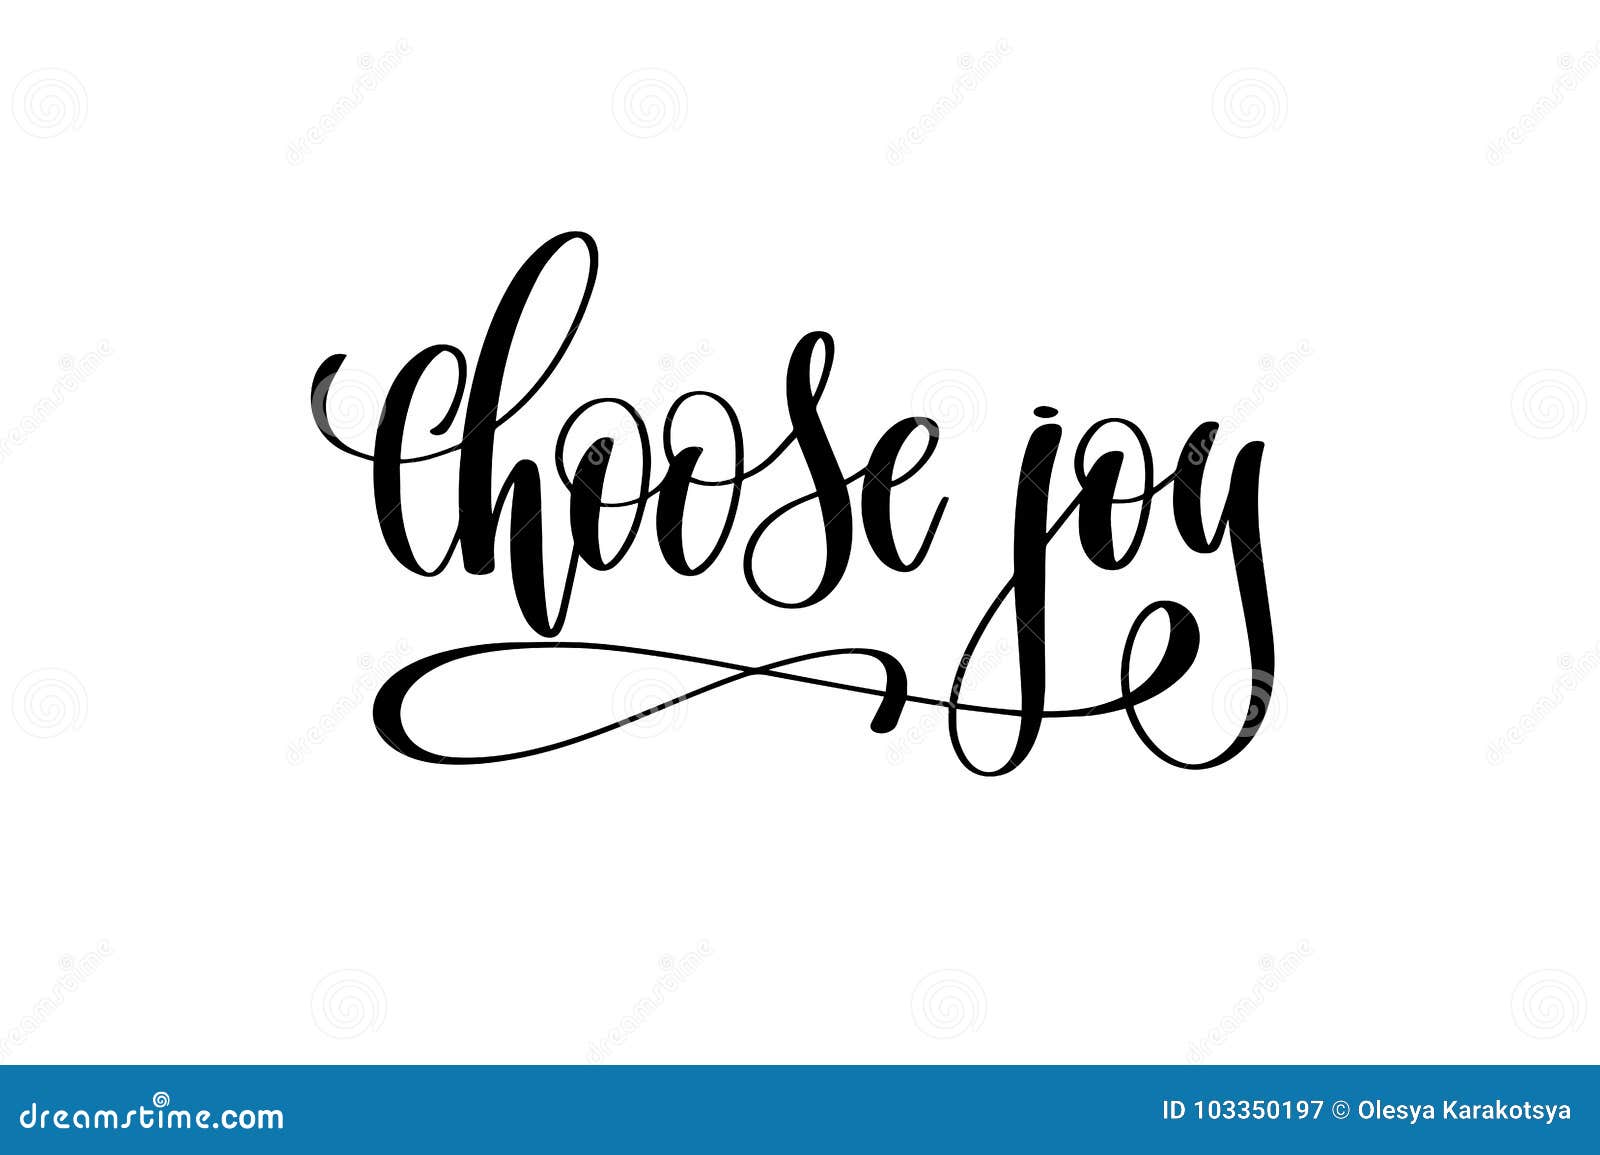 choose joy hand lettering inscription positive quote